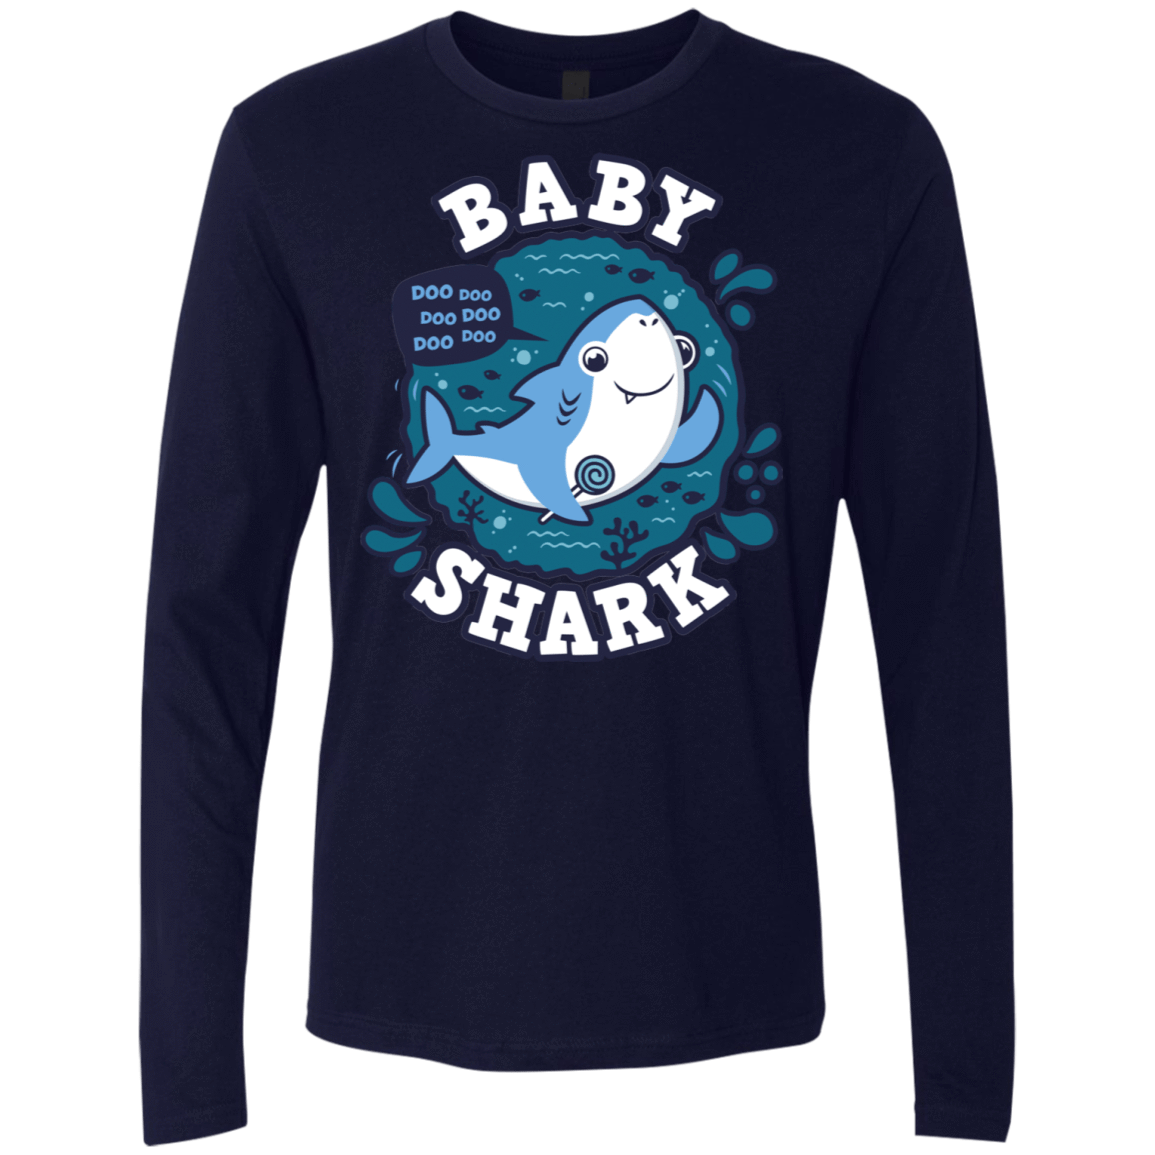 T-Shirts Midnight Navy / S Shark Family trazo - Baby Boy Men's Premium Long Sleeve